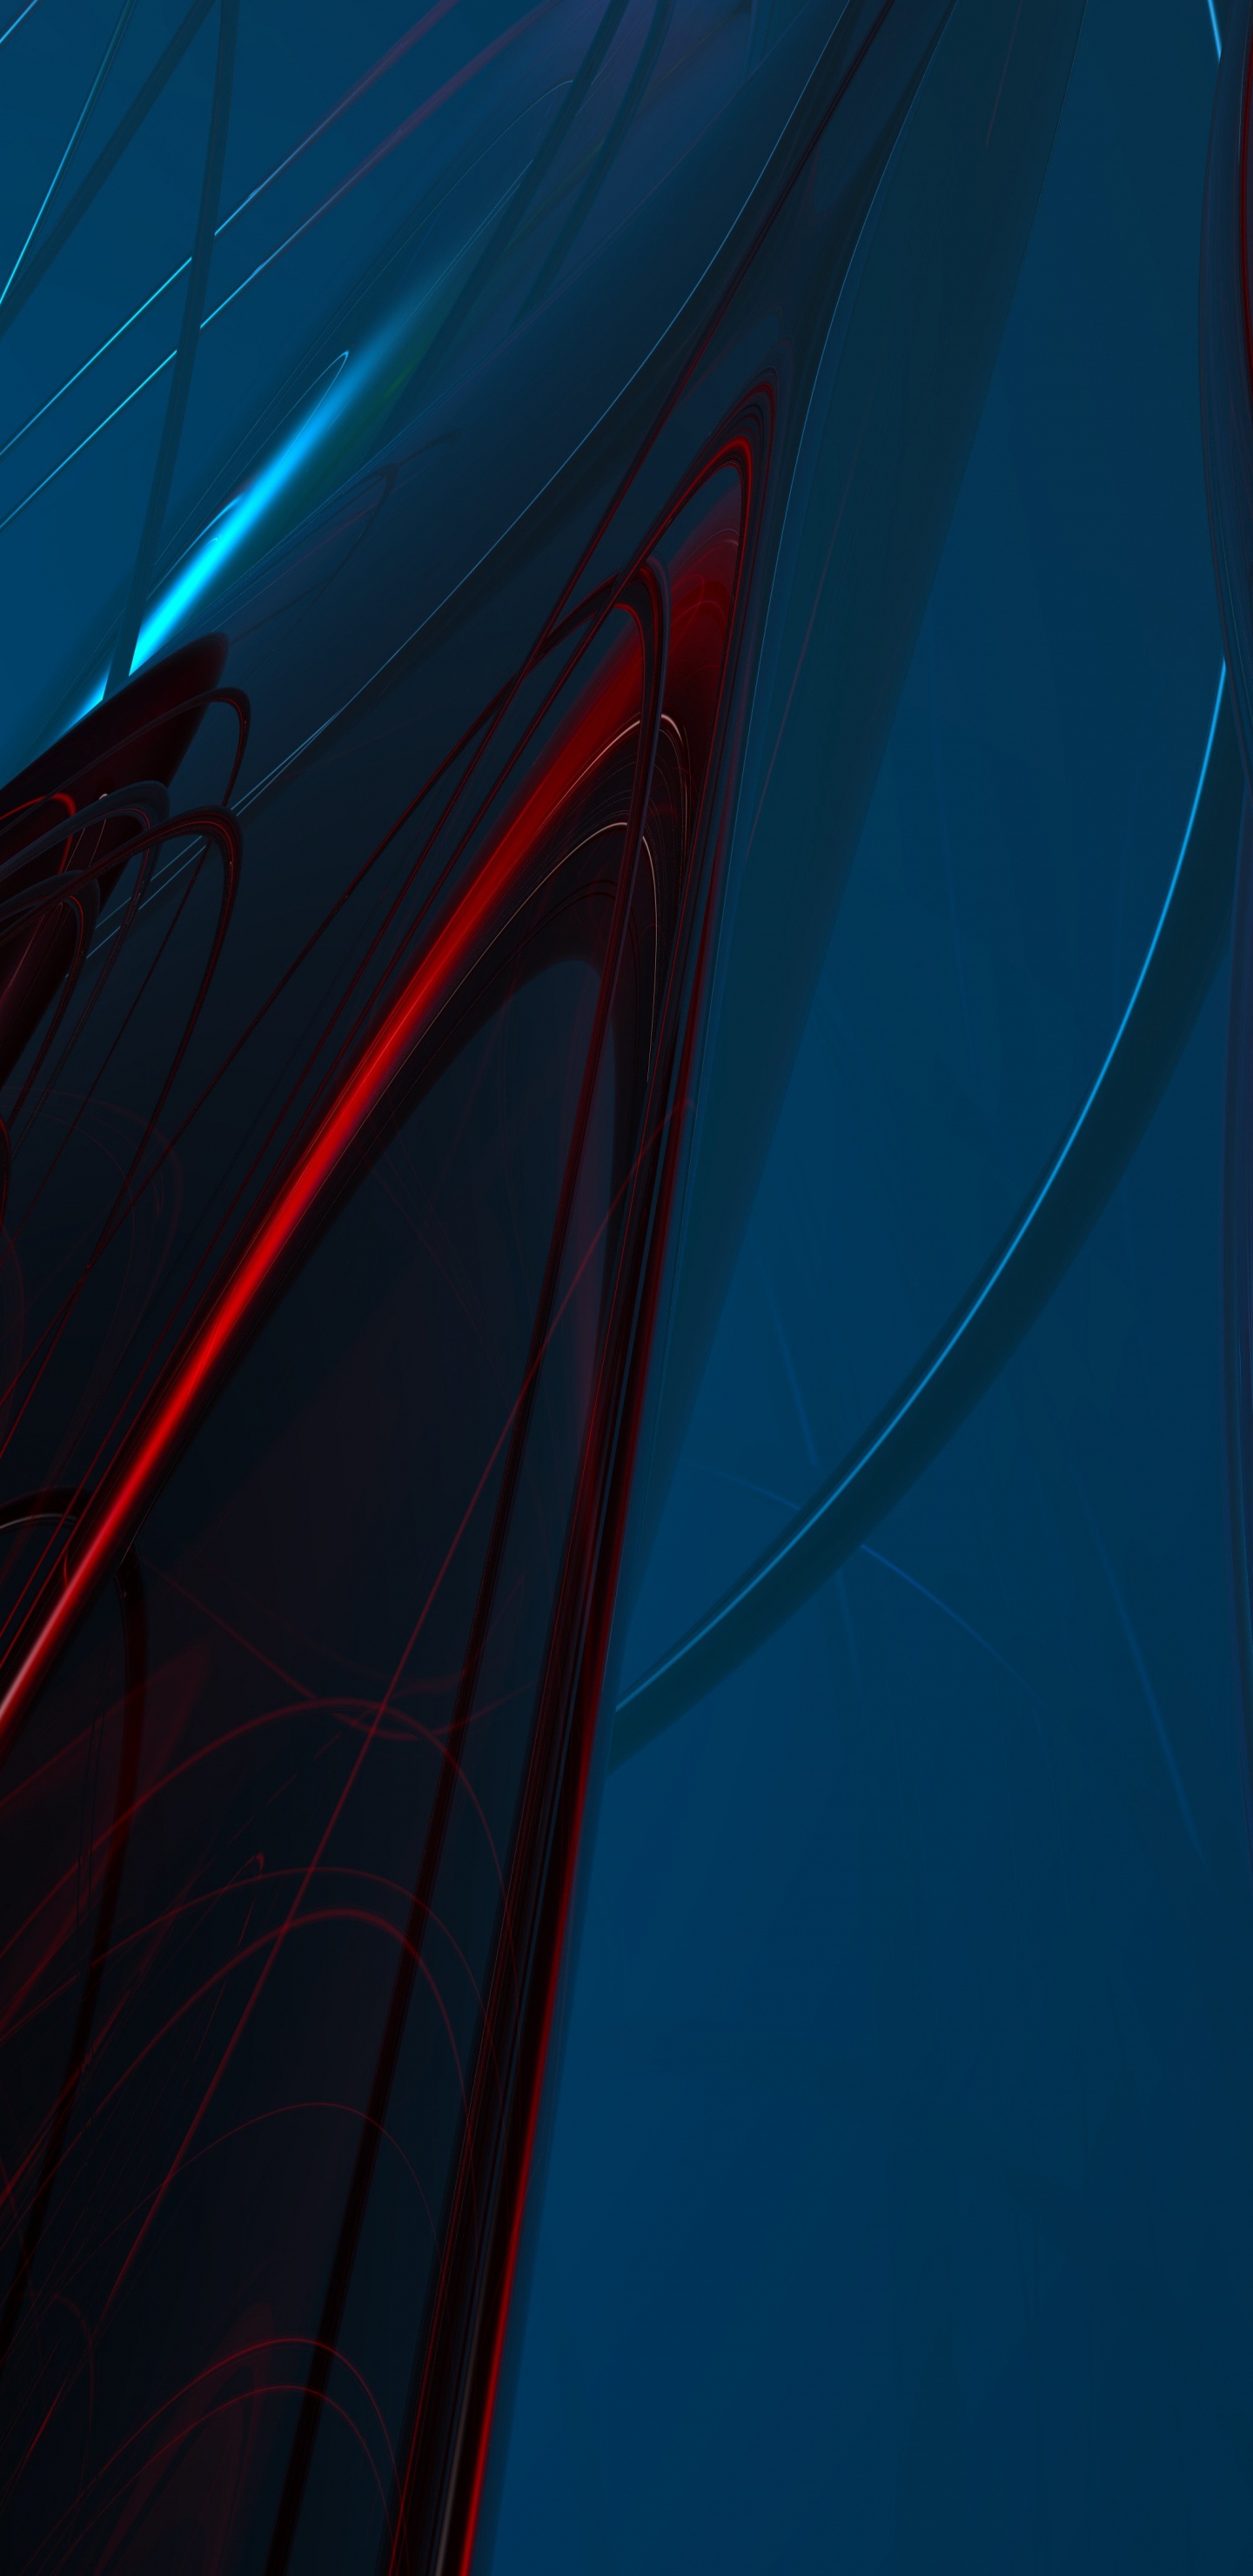 Blaue Und Rote Lichtstreifen. Wallpaper in 1440x2960 Resolution